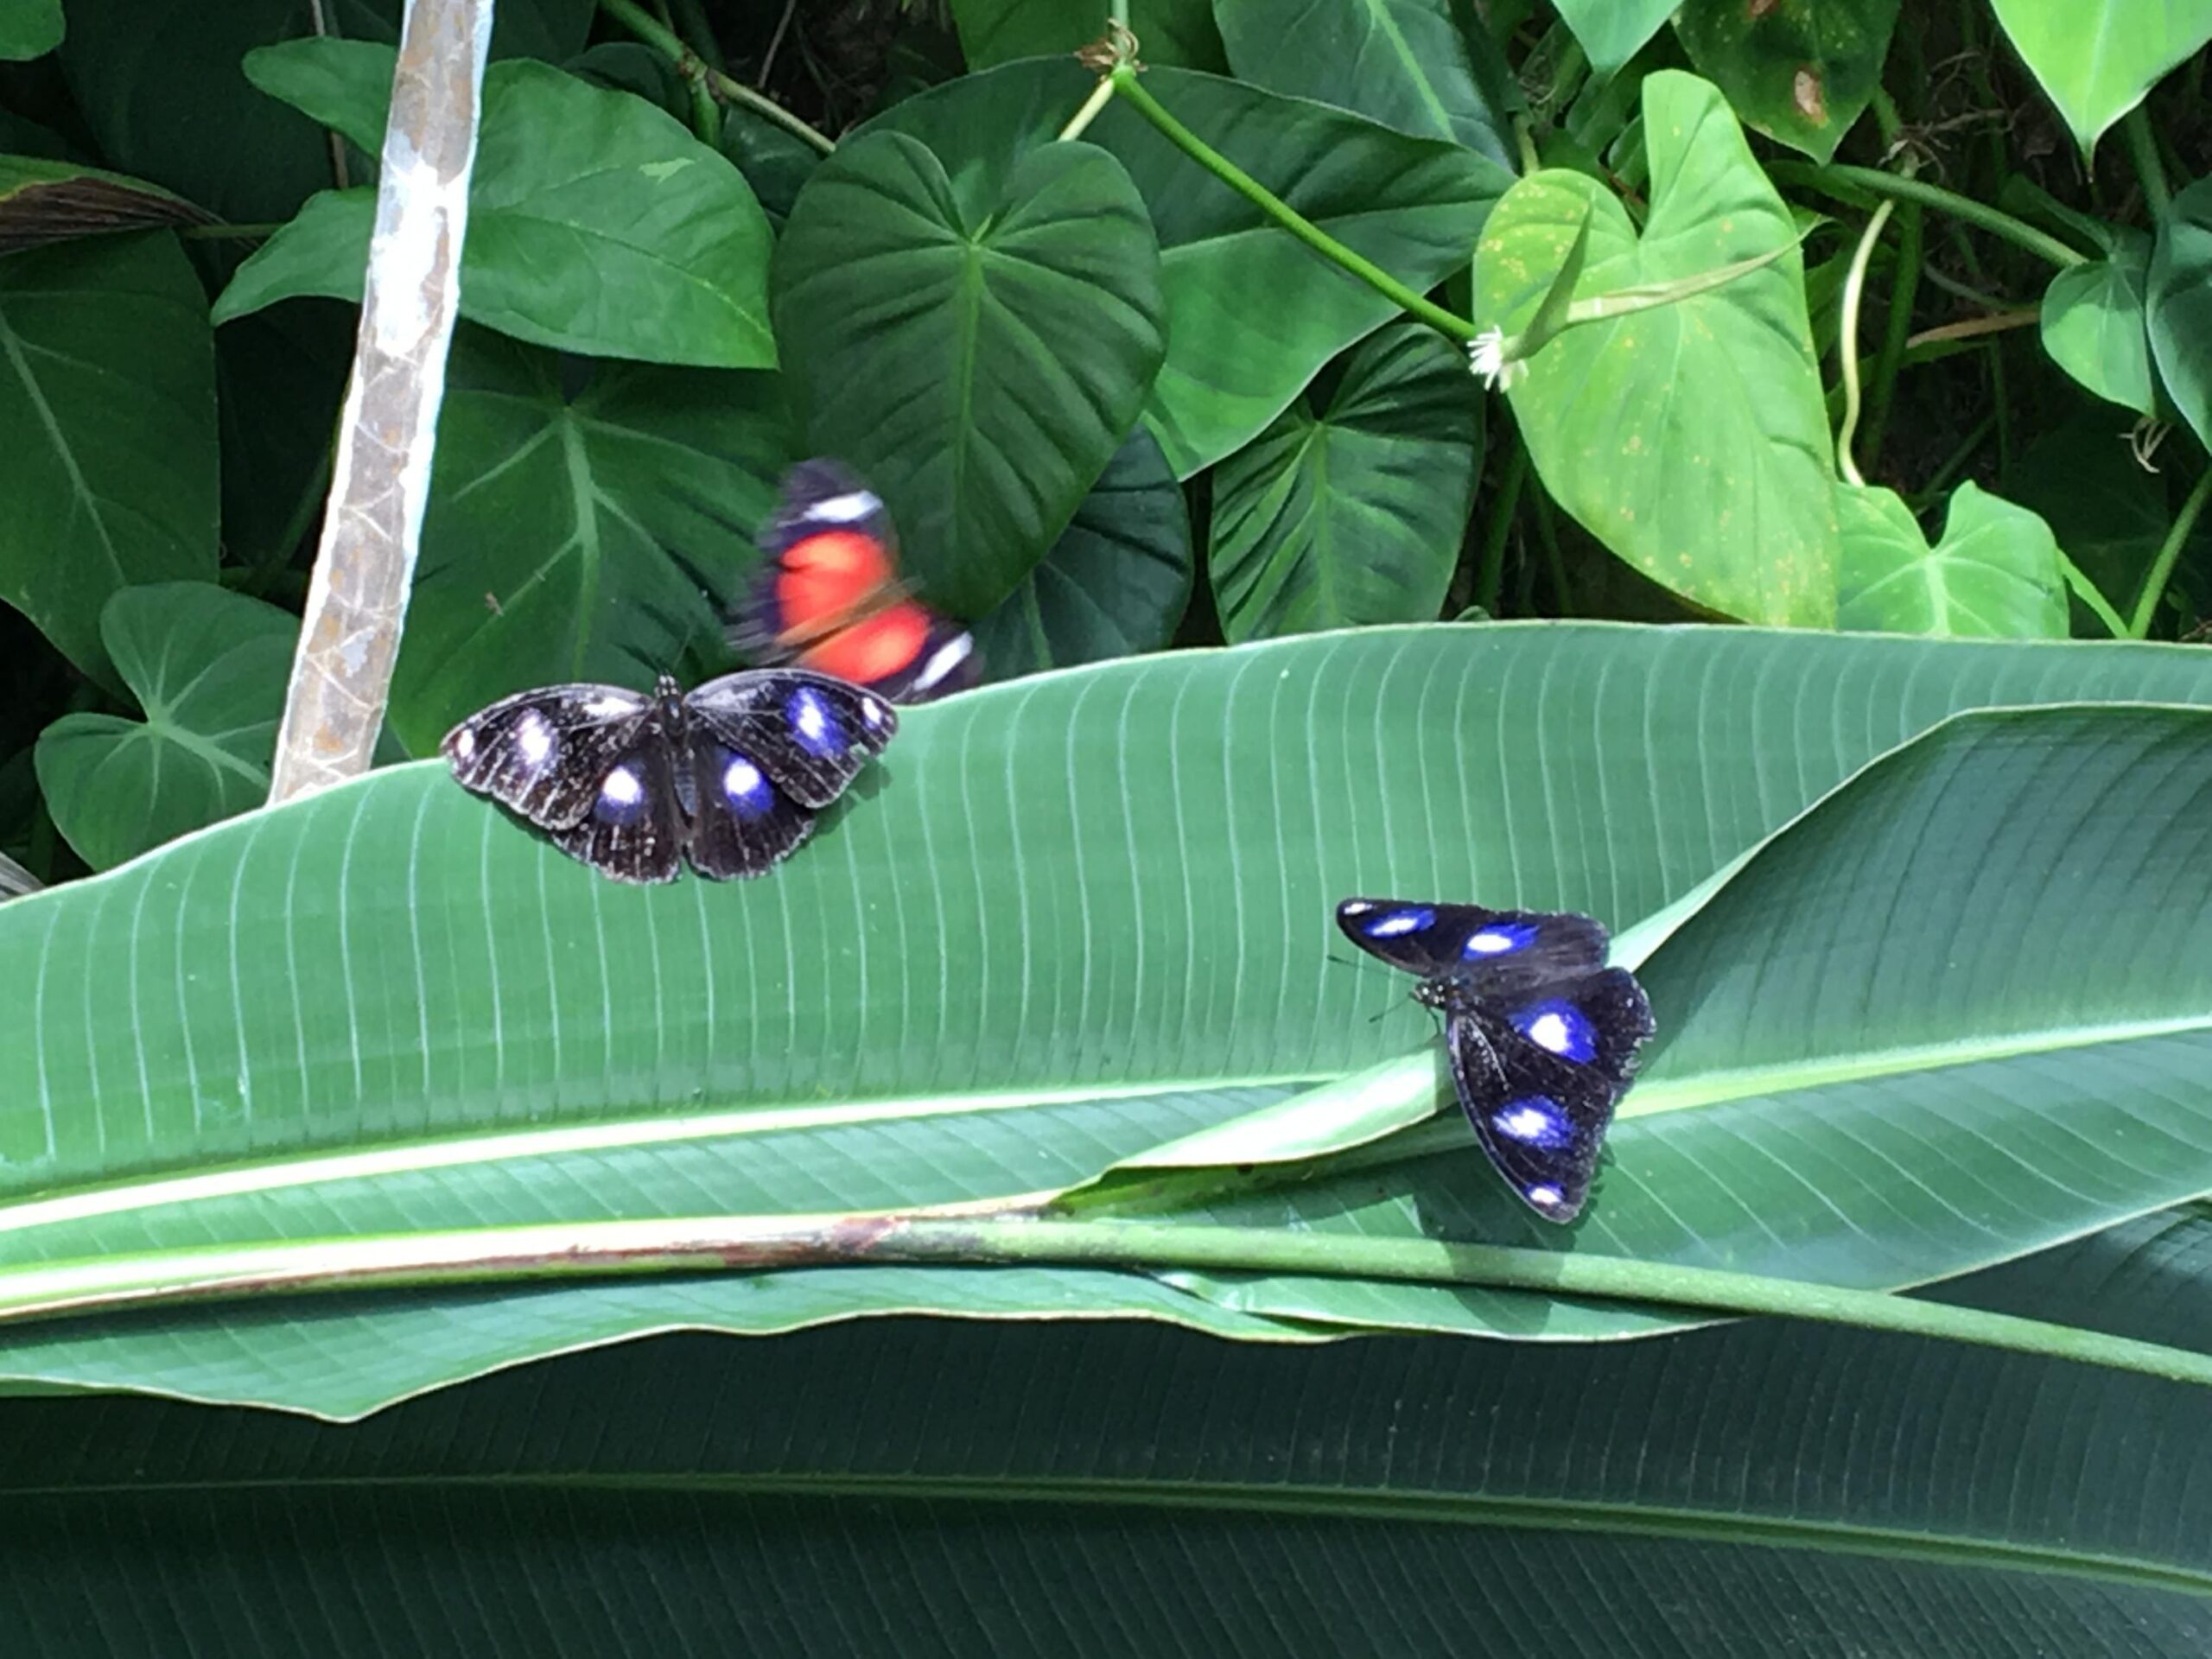 Australian Butterfly Sanctuary in Kuranda, AU - Photo by Allen Rieland